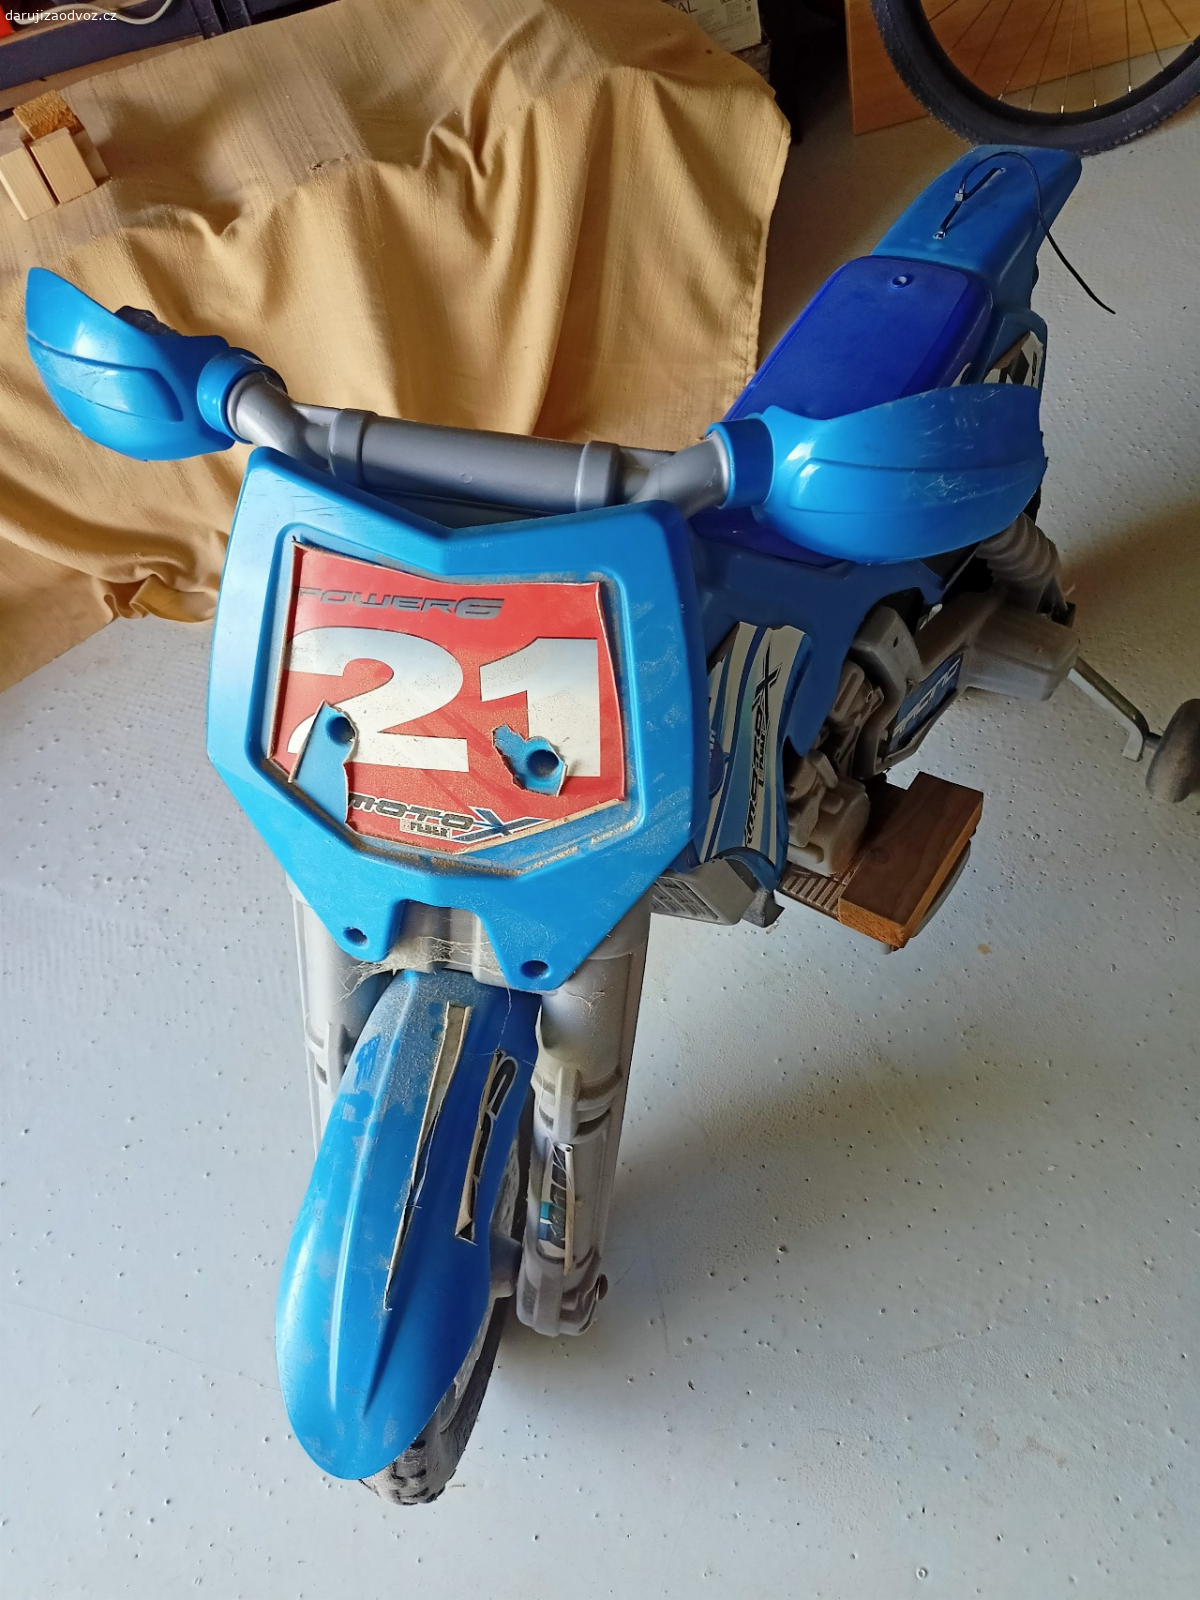 dětská motorka na baterky. nabíjecí baterie, jezdí, akorát se musí nabít (nabíječka není součástí nabídky - používá se 6V)